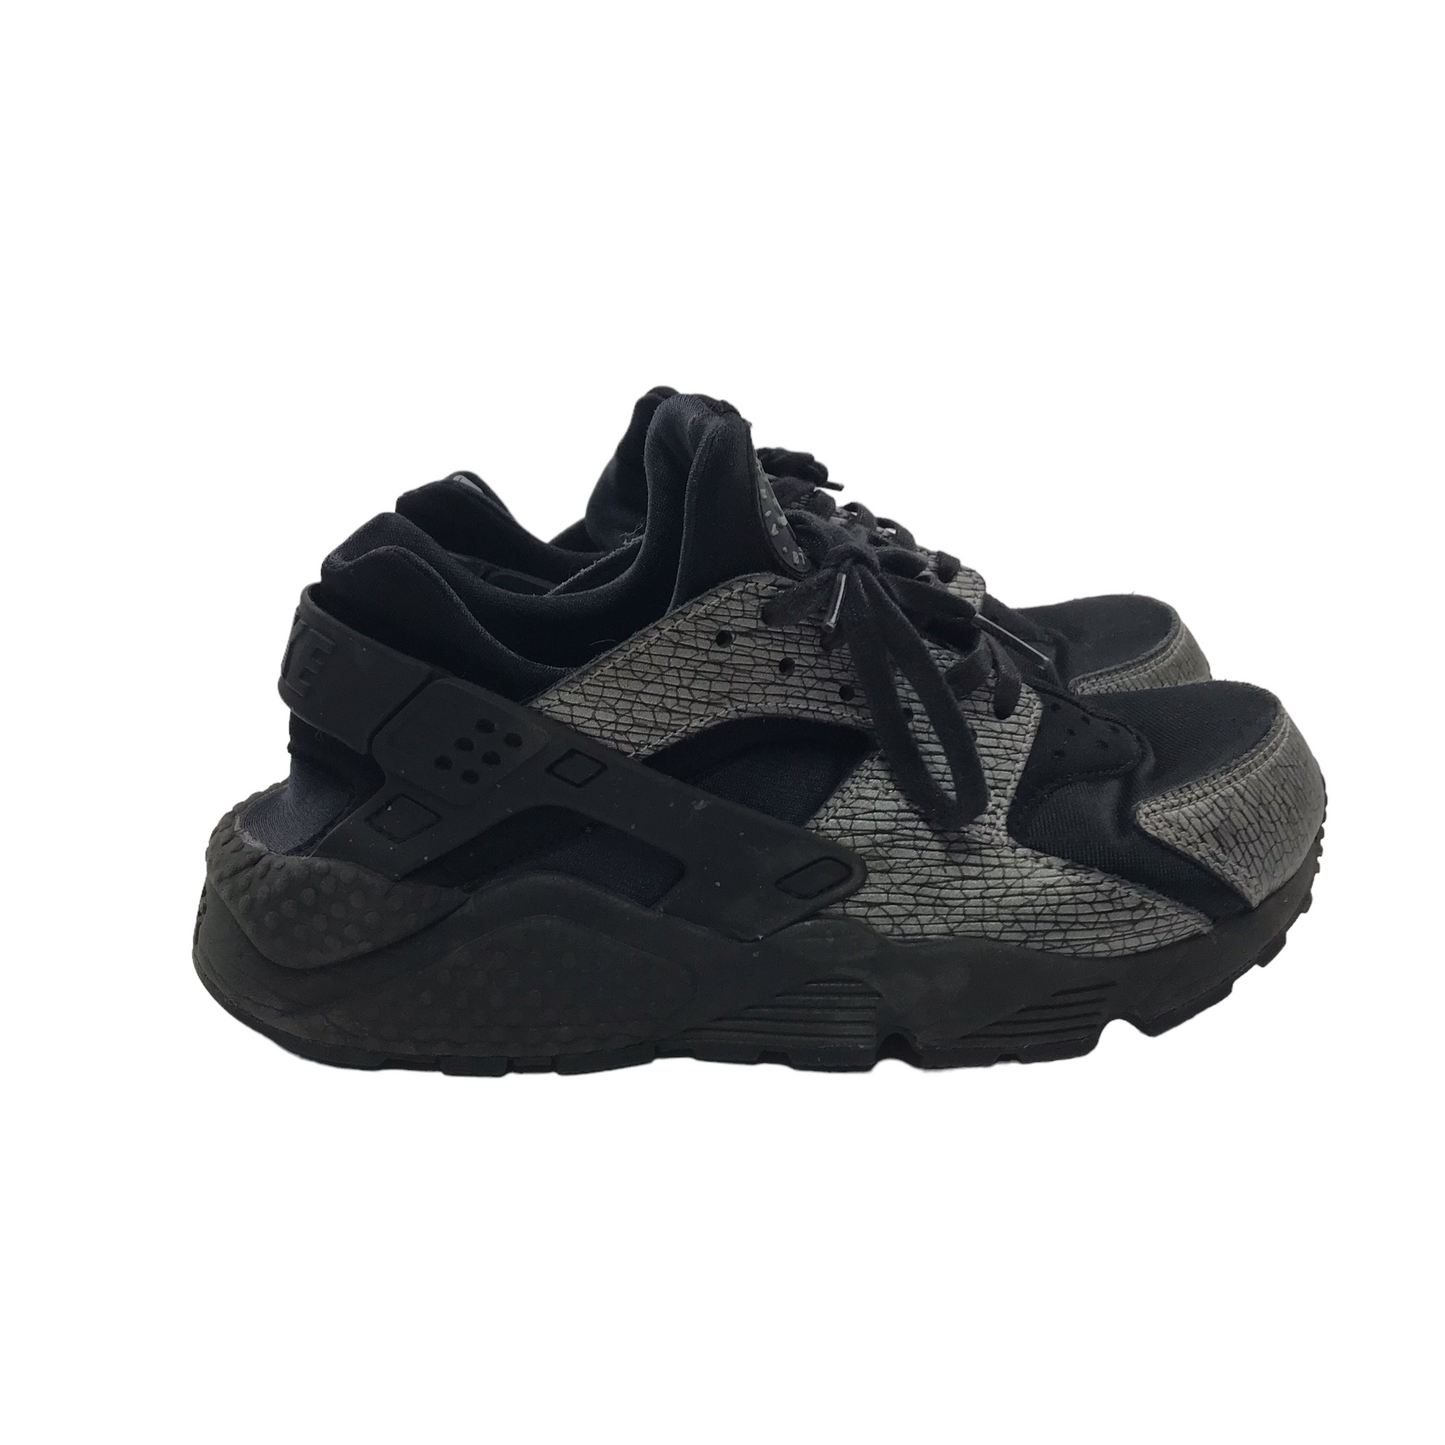 Nike Huarache Black Trainers Shoe Size 5.5